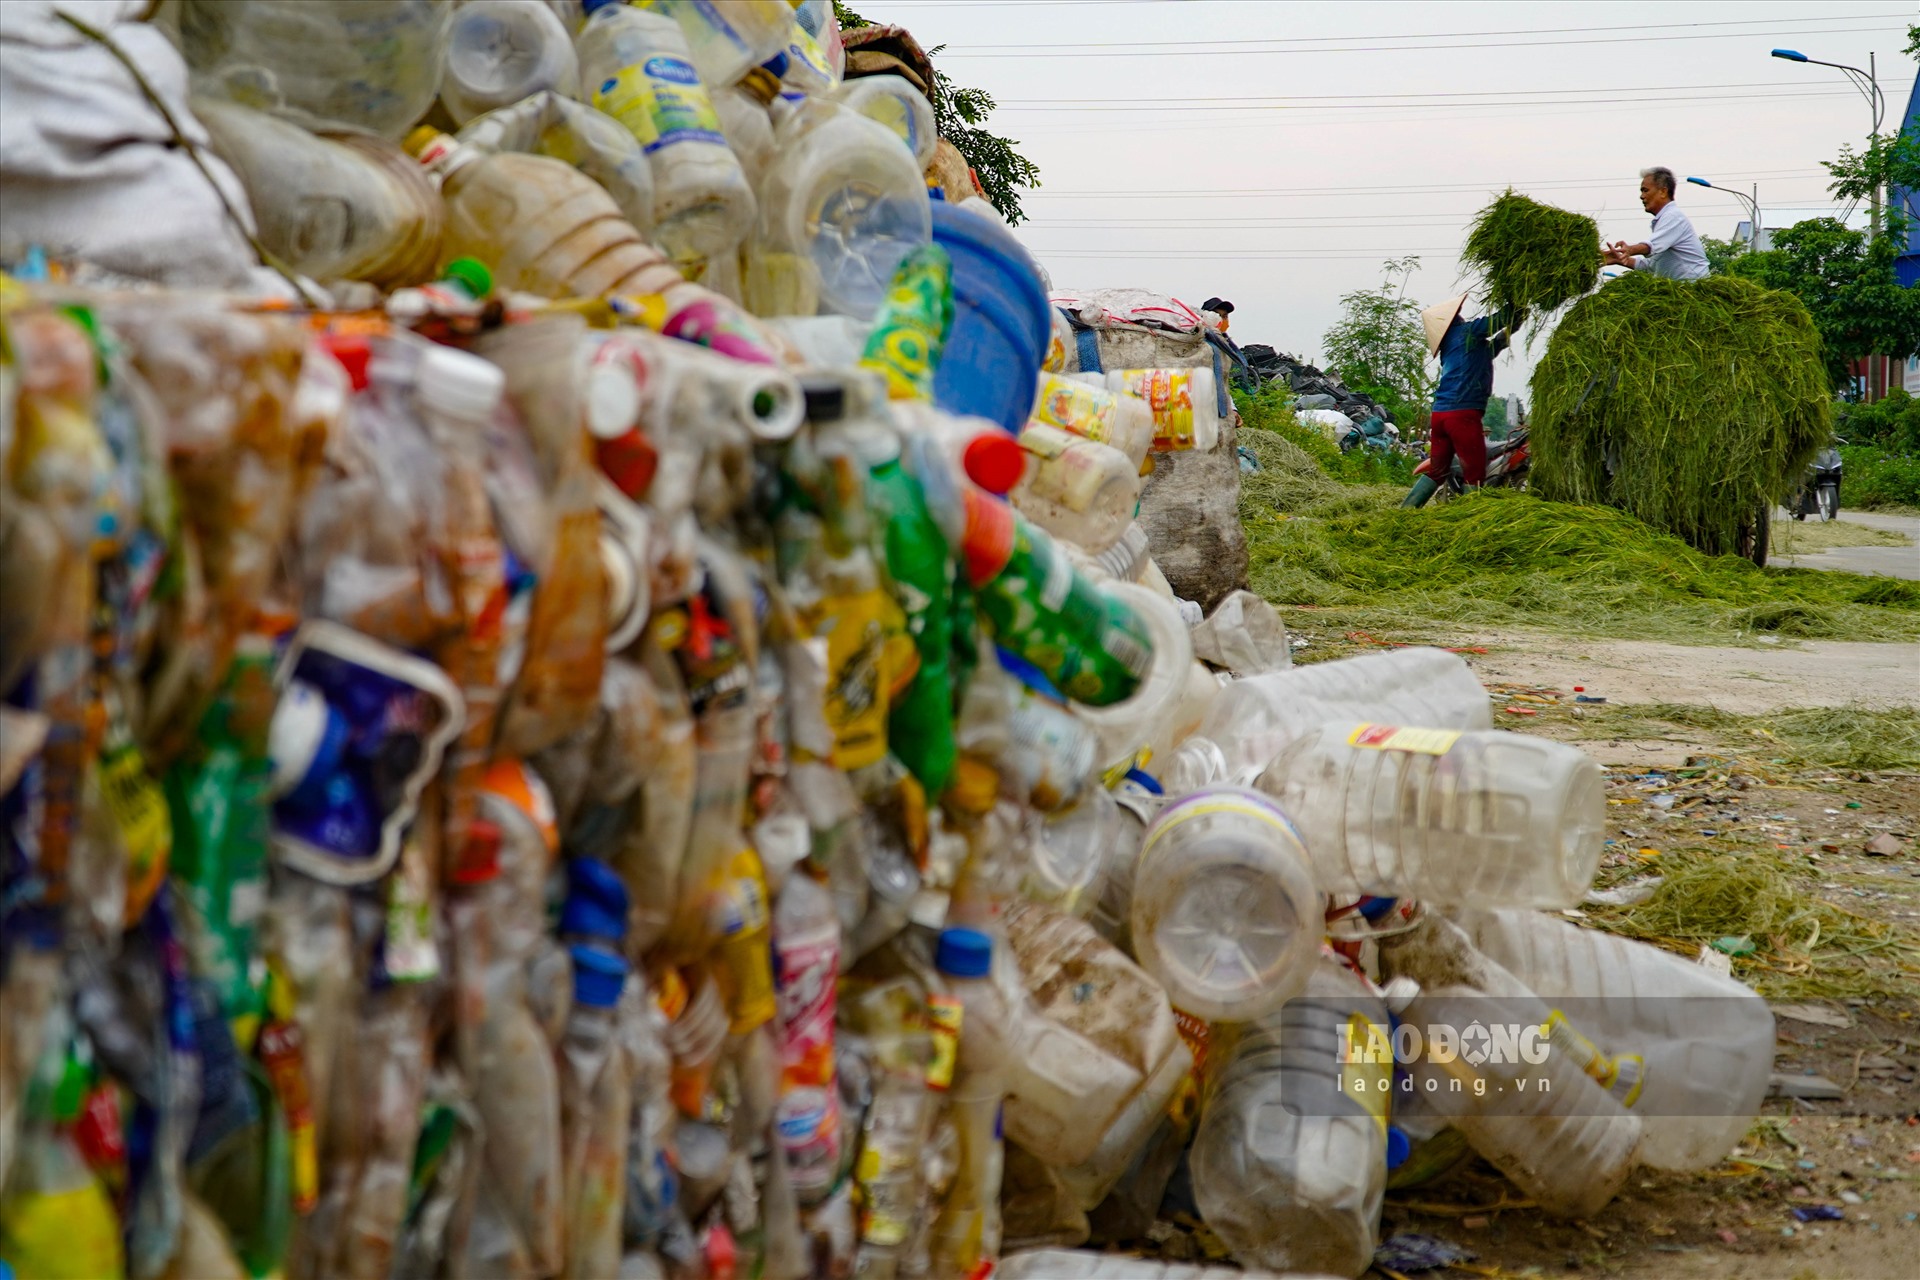 Tuy nhiên, việc phát triển tái chế nhựa lại ảnh hưởng không nhỏ đến môi trường sống của người dân địa phương. Bởi, phần lớn các hộ sản xuất tái chế nhựa vẫn làm tập trung xen lẫn trong các khu dân cư đông đúc.